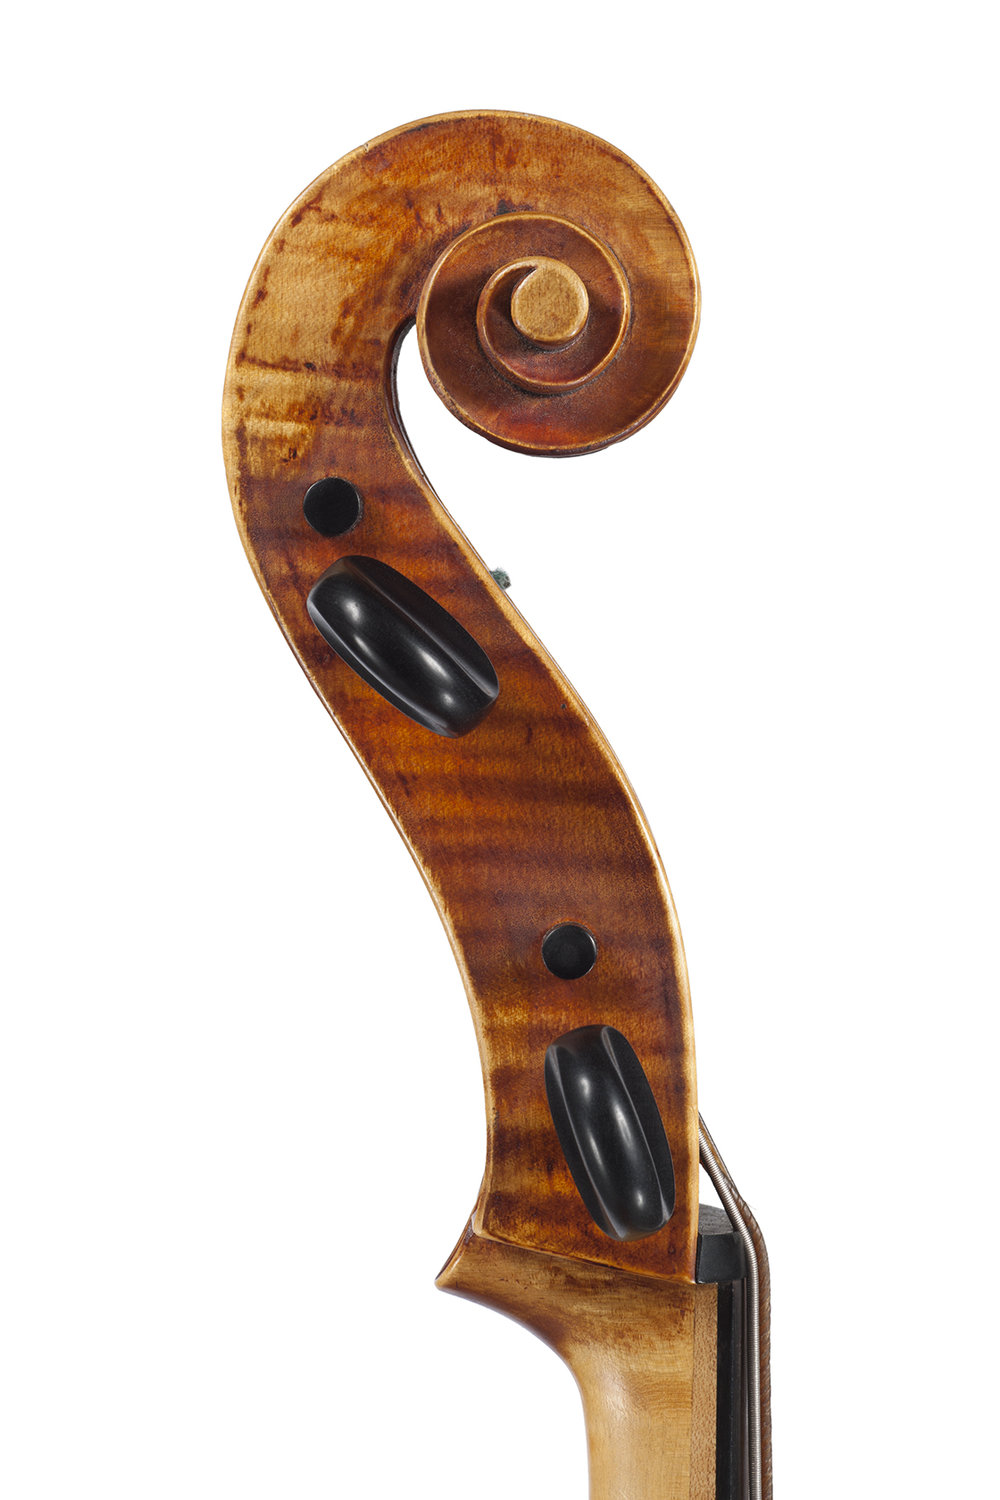 Crijnen-Baroque-'Cello-scroll-Detmar-Leertouwer-Dominus-Maris-Music-Productions.jpg